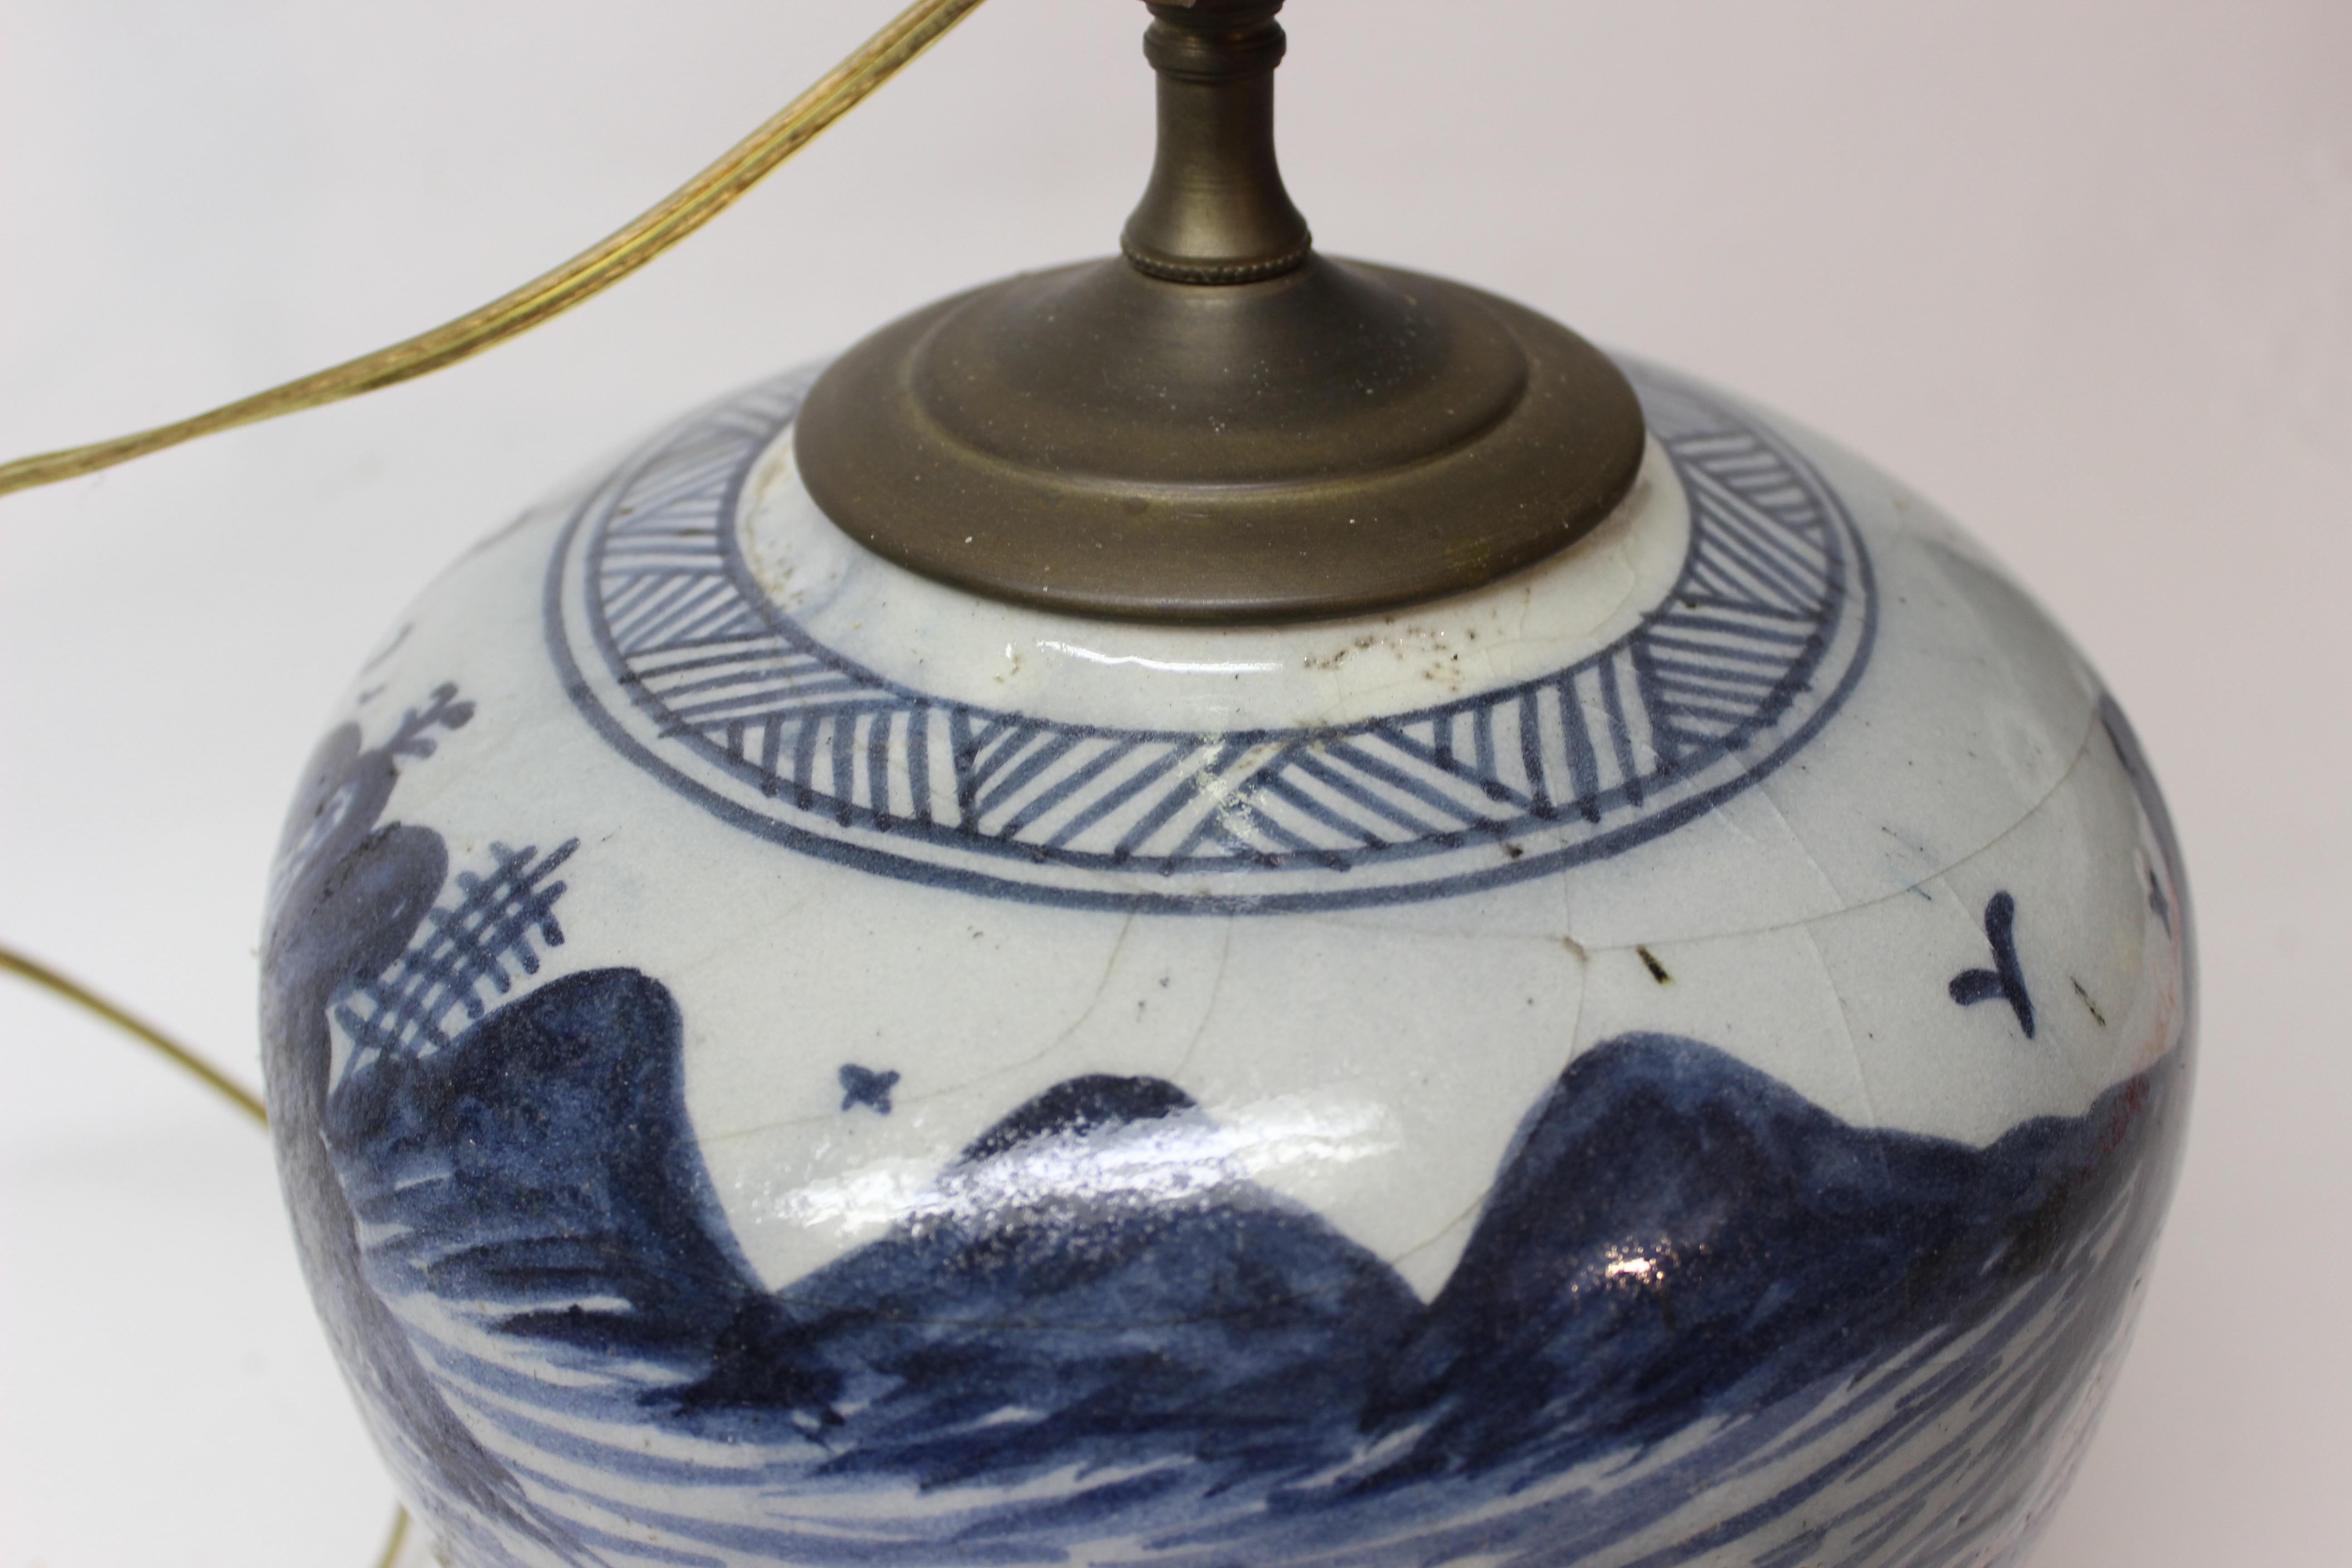 Chinesische Ingwerlampe in Blau und Weiß (20. Jahrhundert)